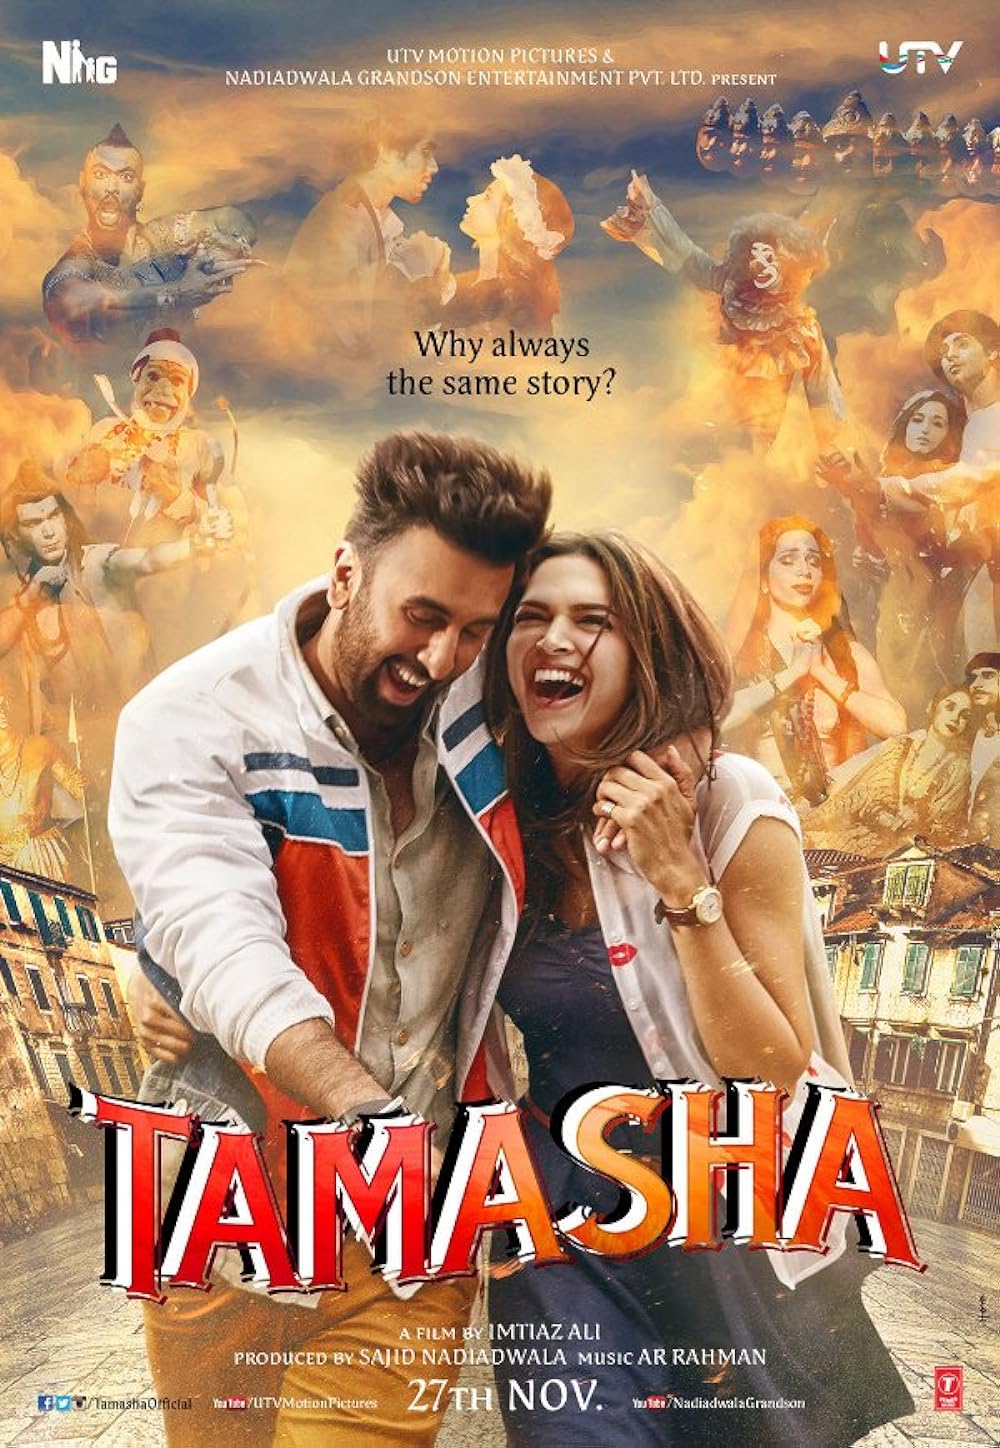 Download Tamasha (2015) Hindi Movie Bluray || 720p [1.2GB] || 1080p [5GB] ||